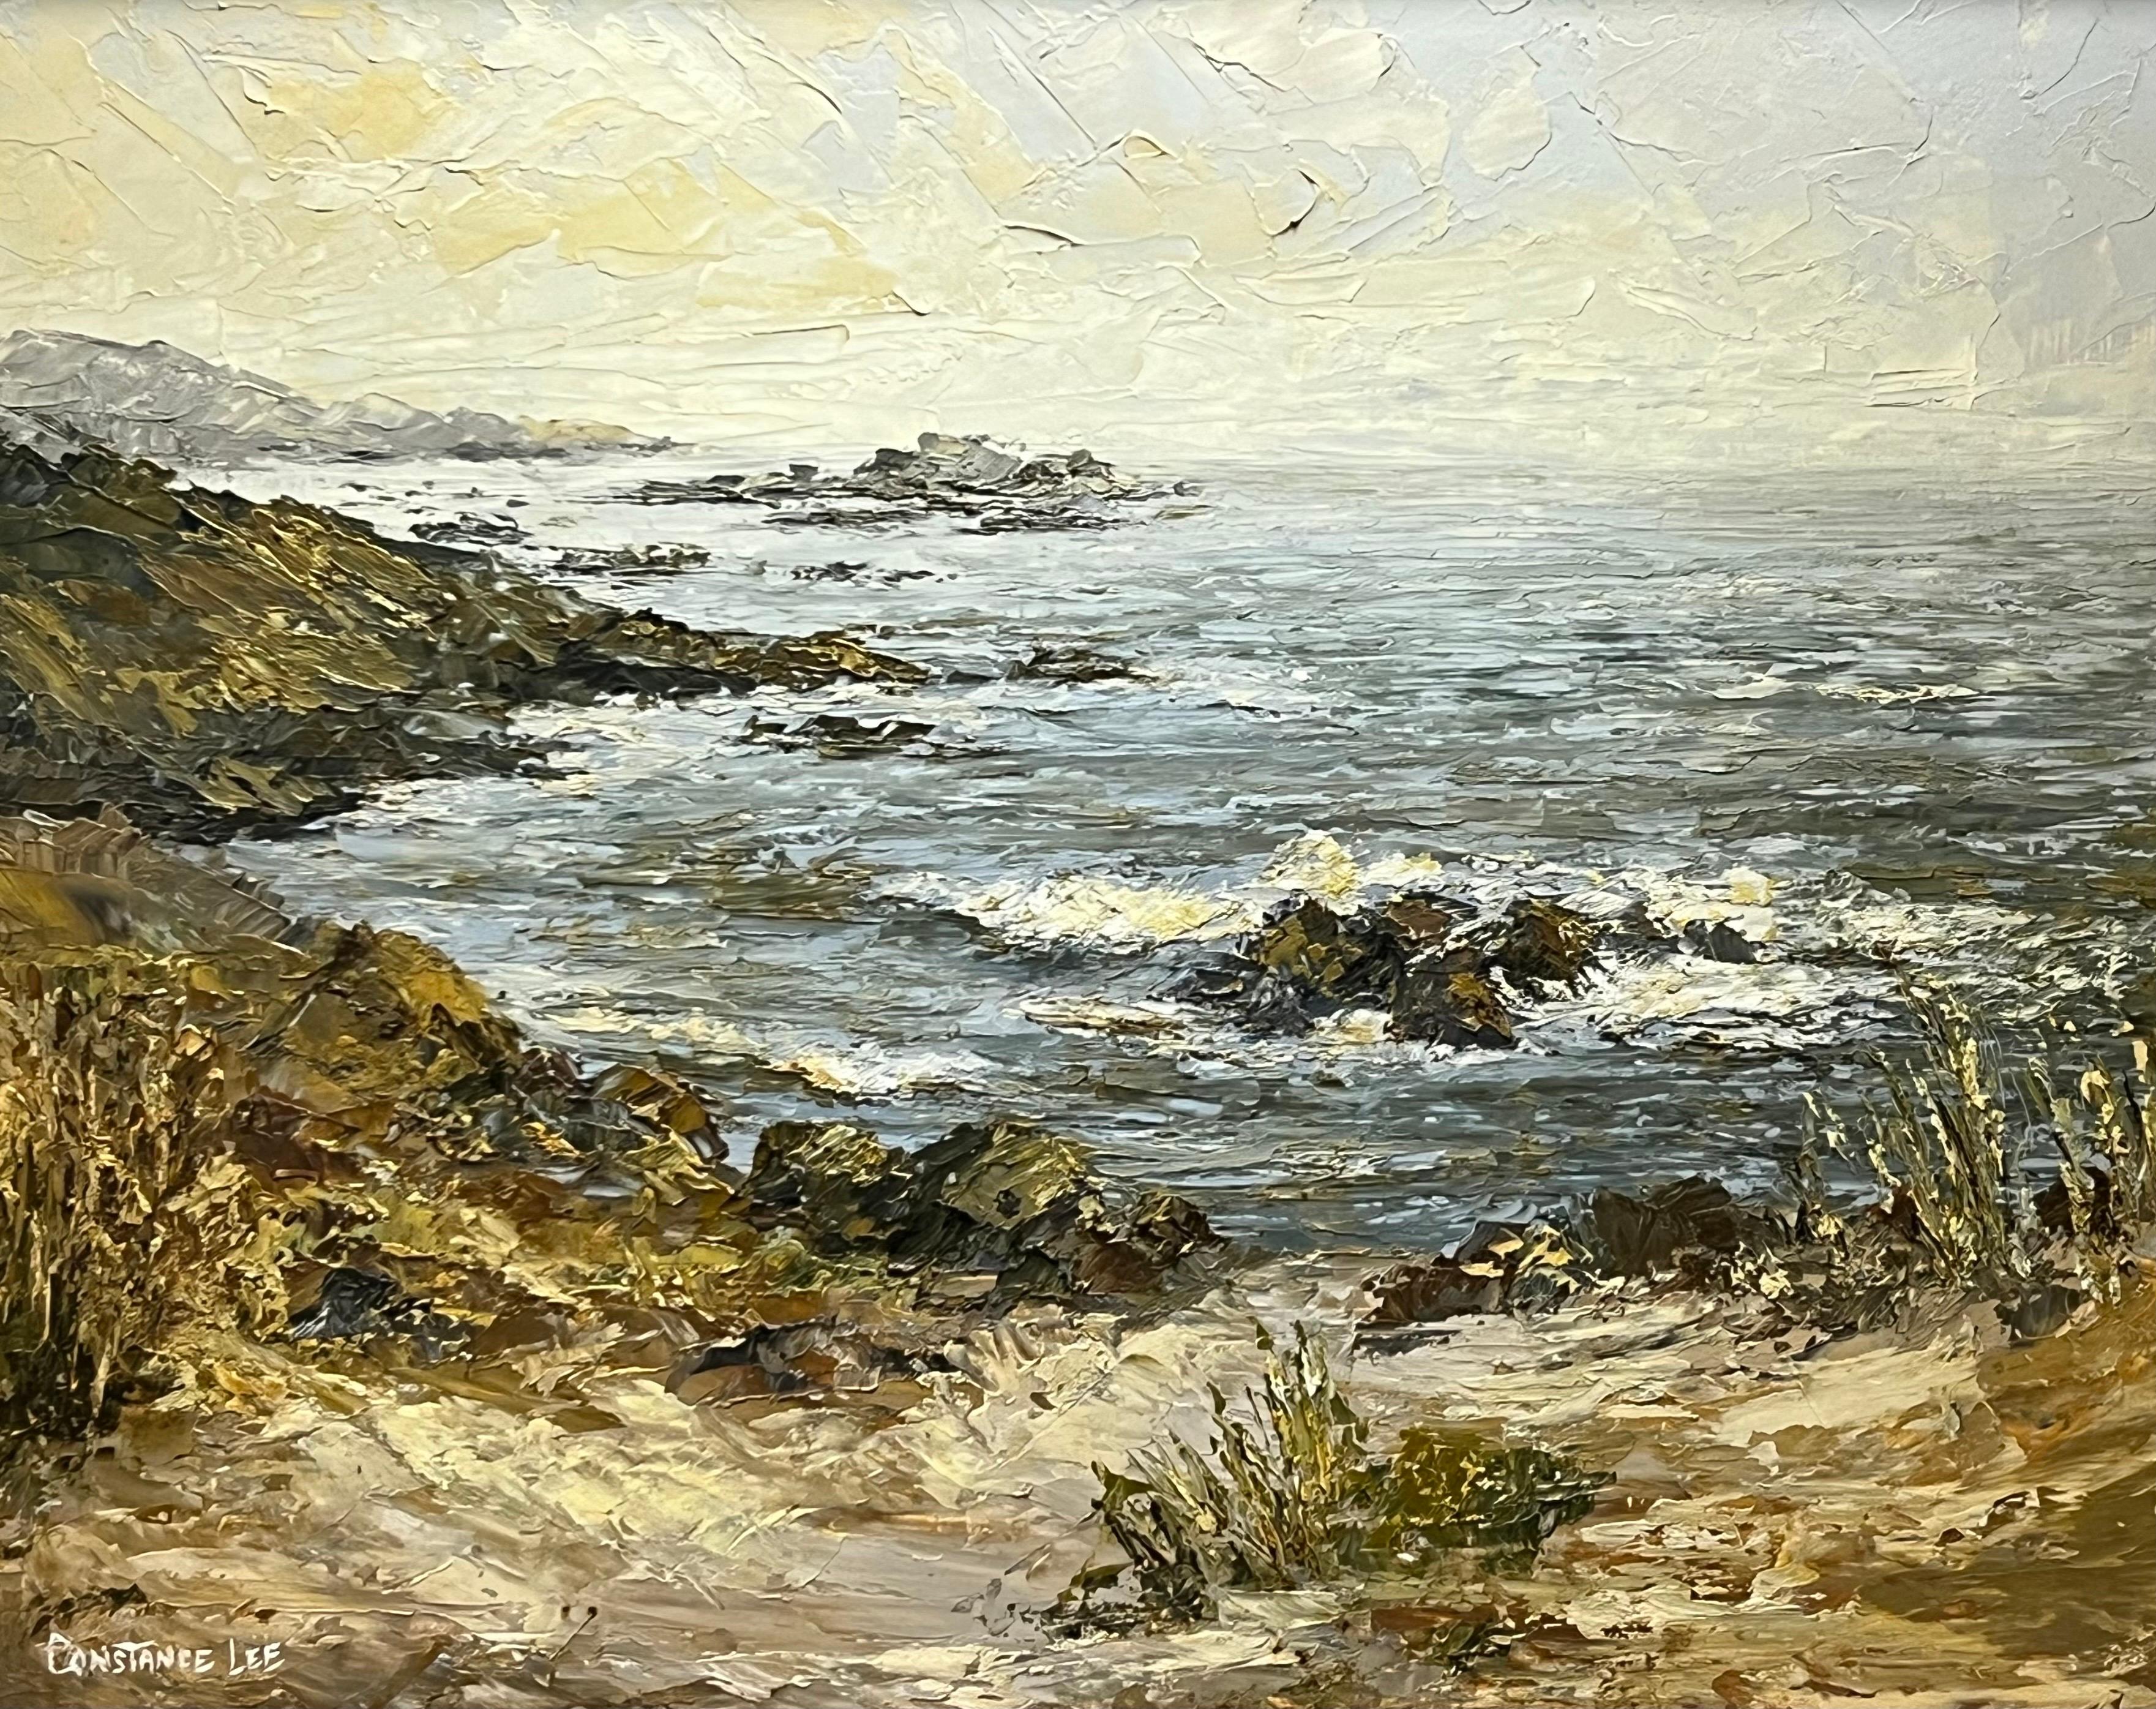 Kalifornische Küstenlandschaft, Meereslandschaft, Landschaft, Impasto-Gemälde des Künstlers des 20. Jahrhunderts – Painting von Constance Lee